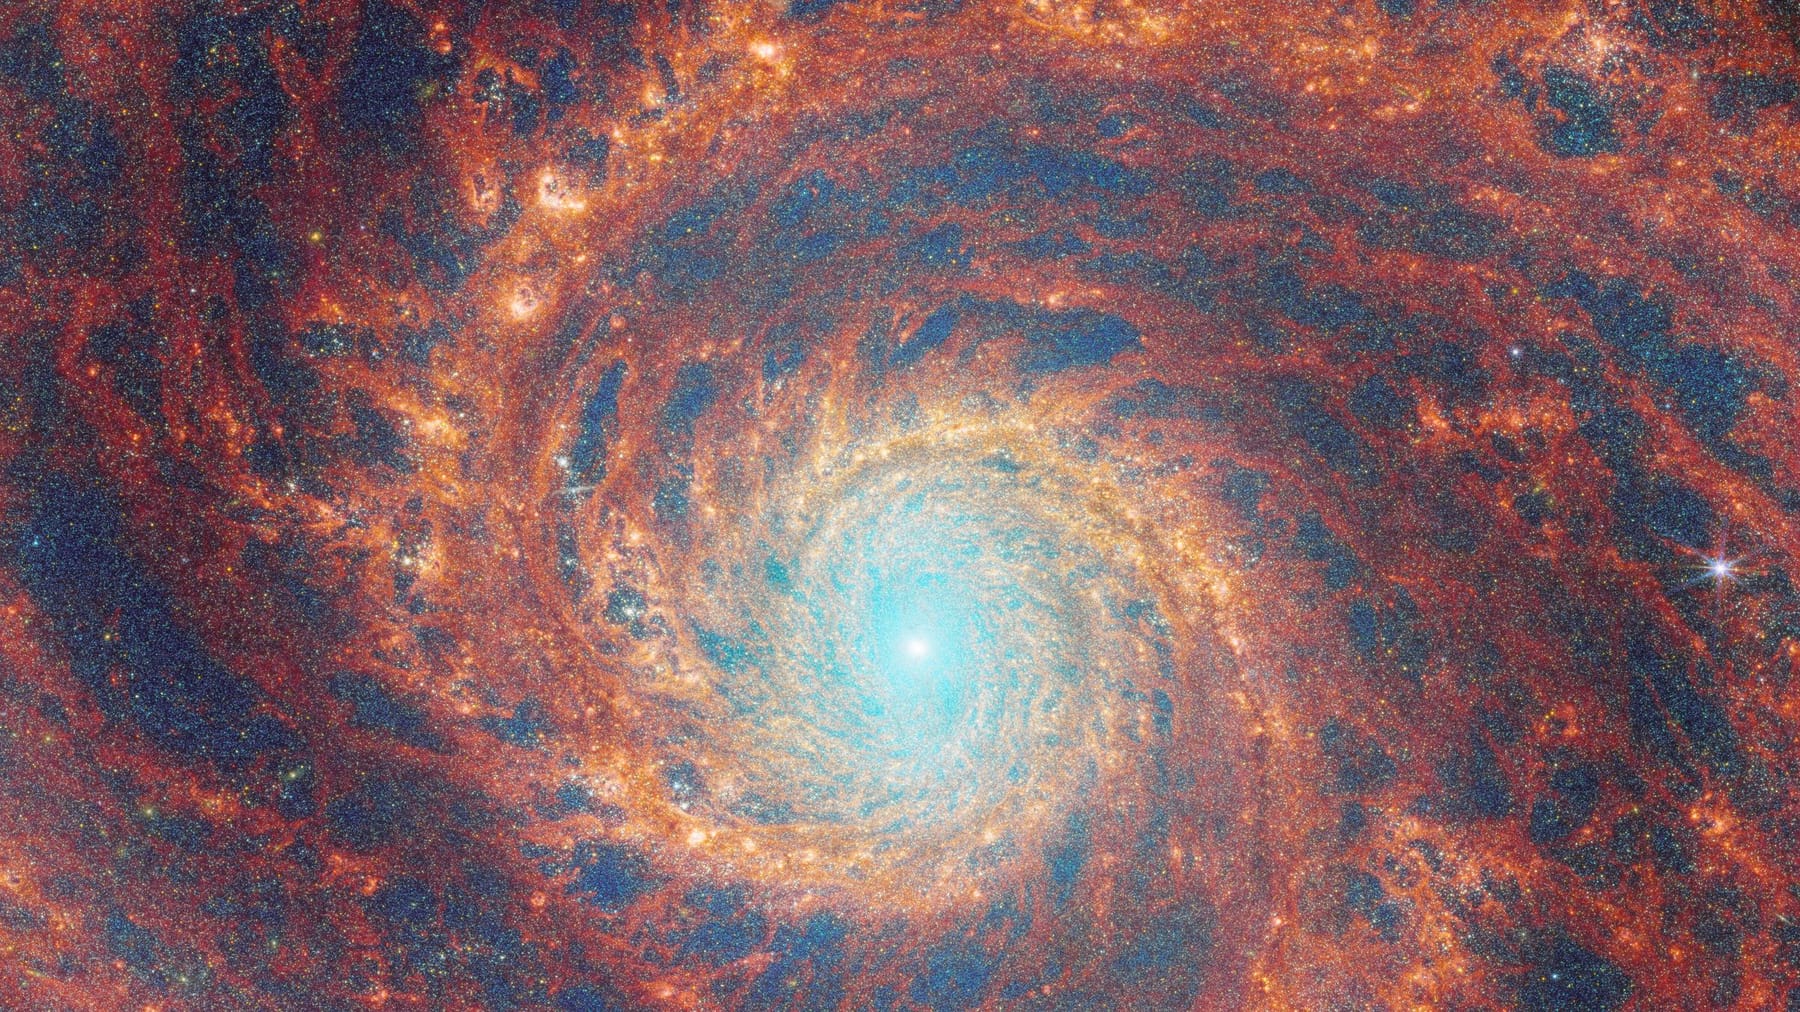 Impresionante imagen del telescopio James Webb: una imagen de la NASA que muestra la galaxia espiral